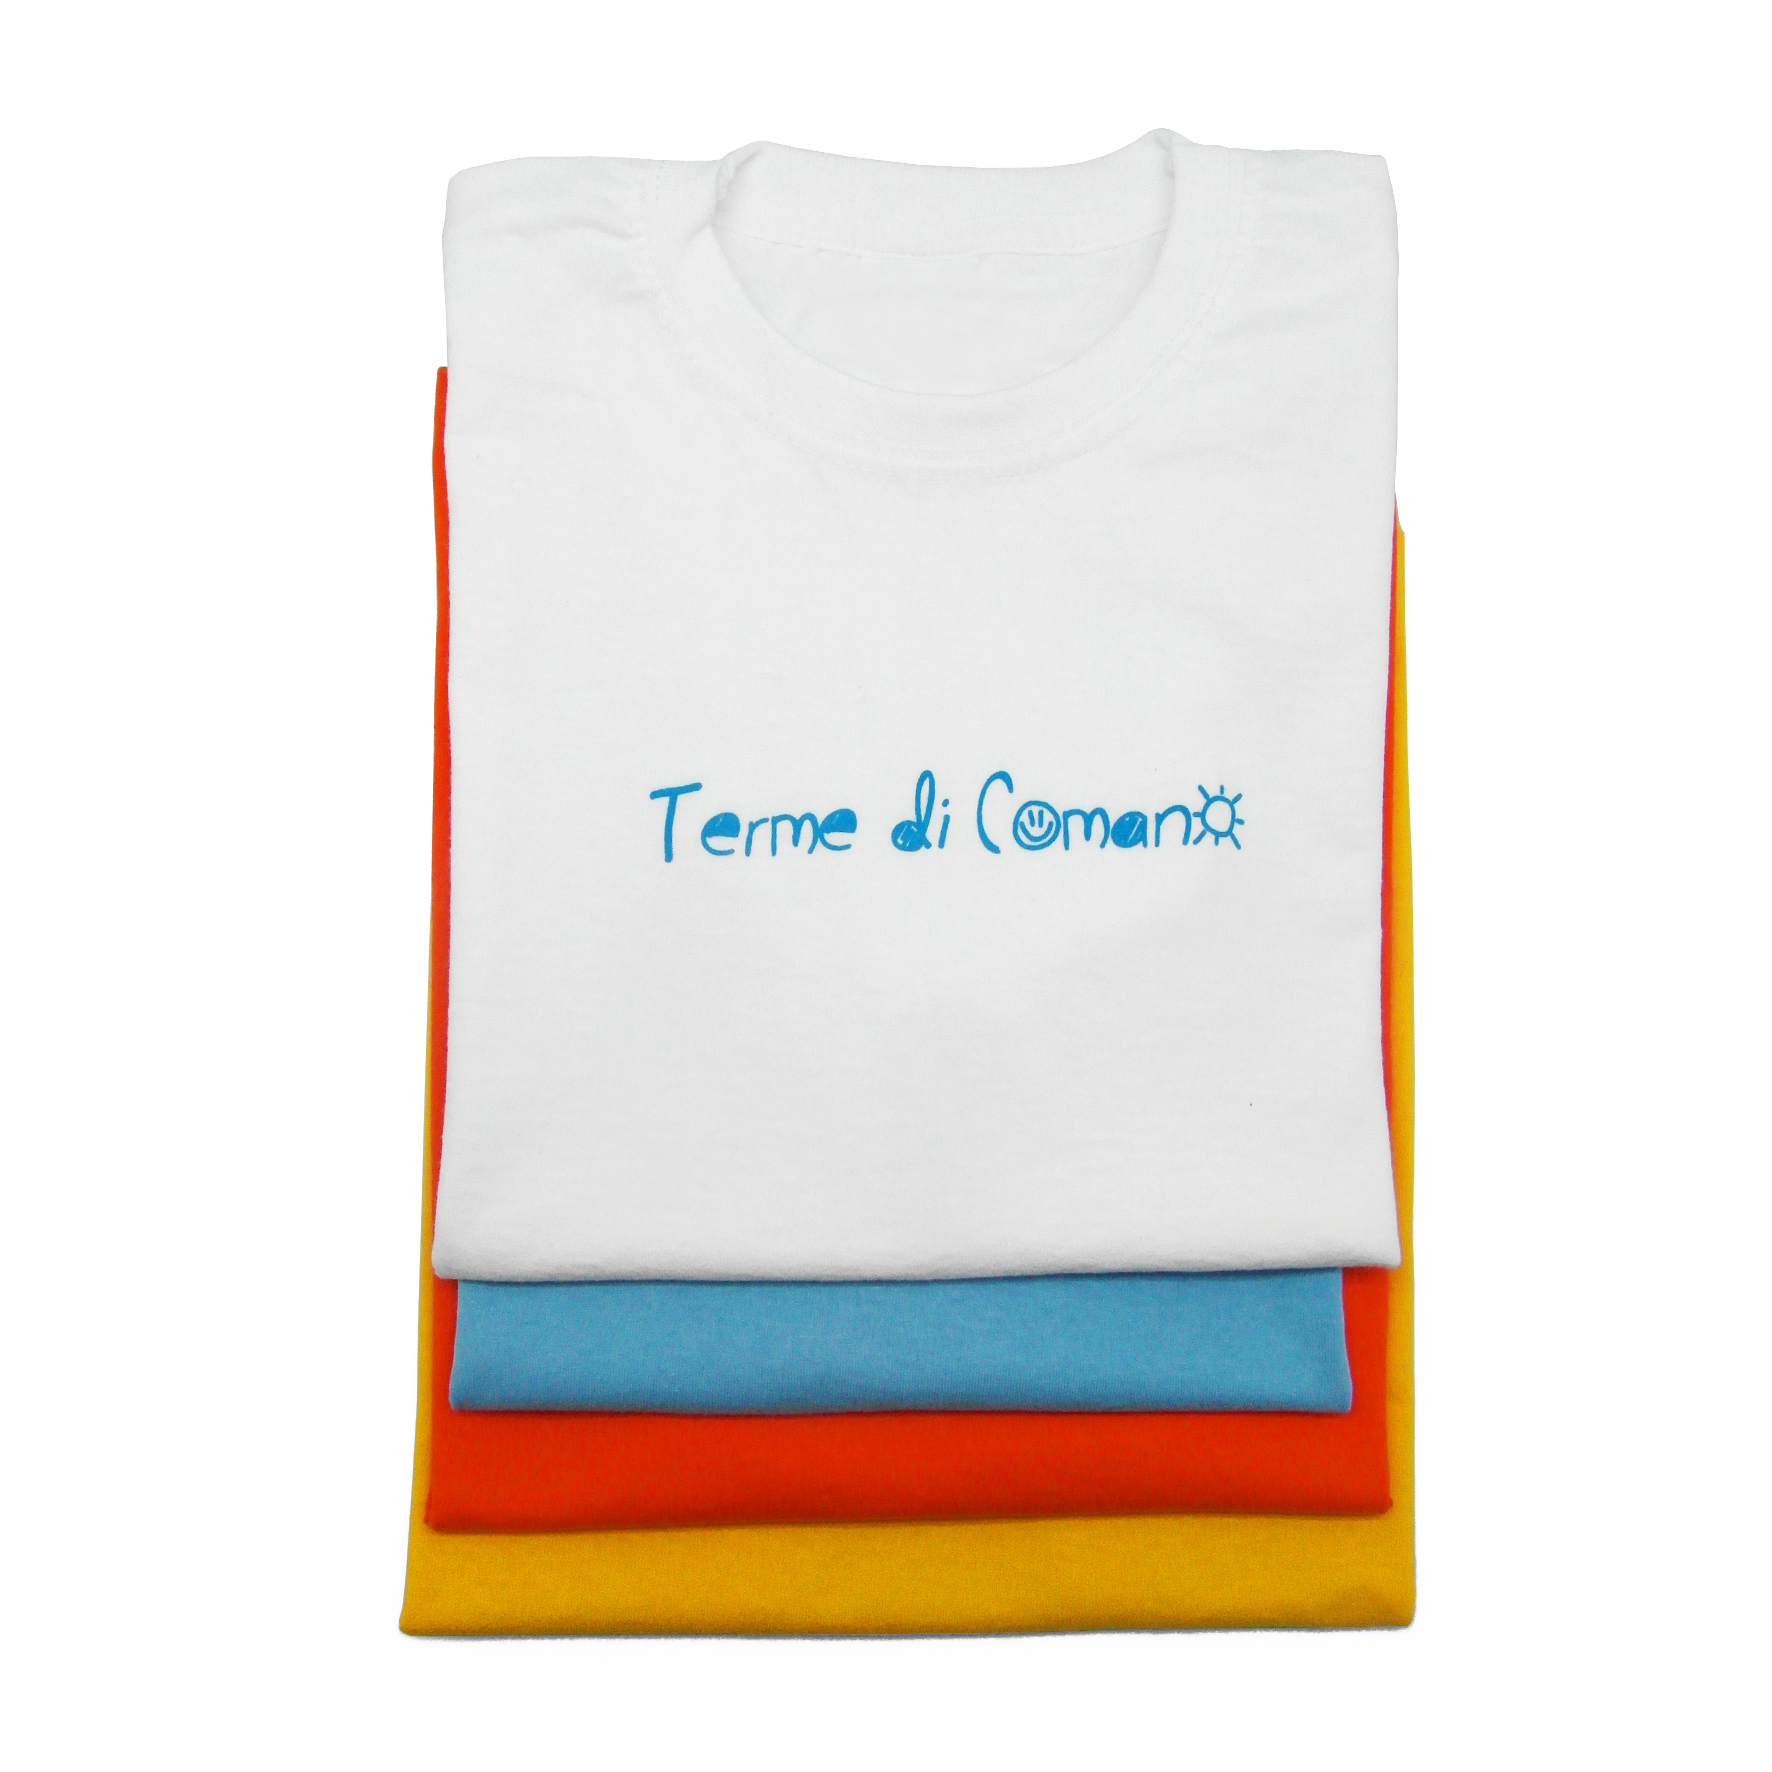 T-shirt bambino realizzata per le terme di Comano